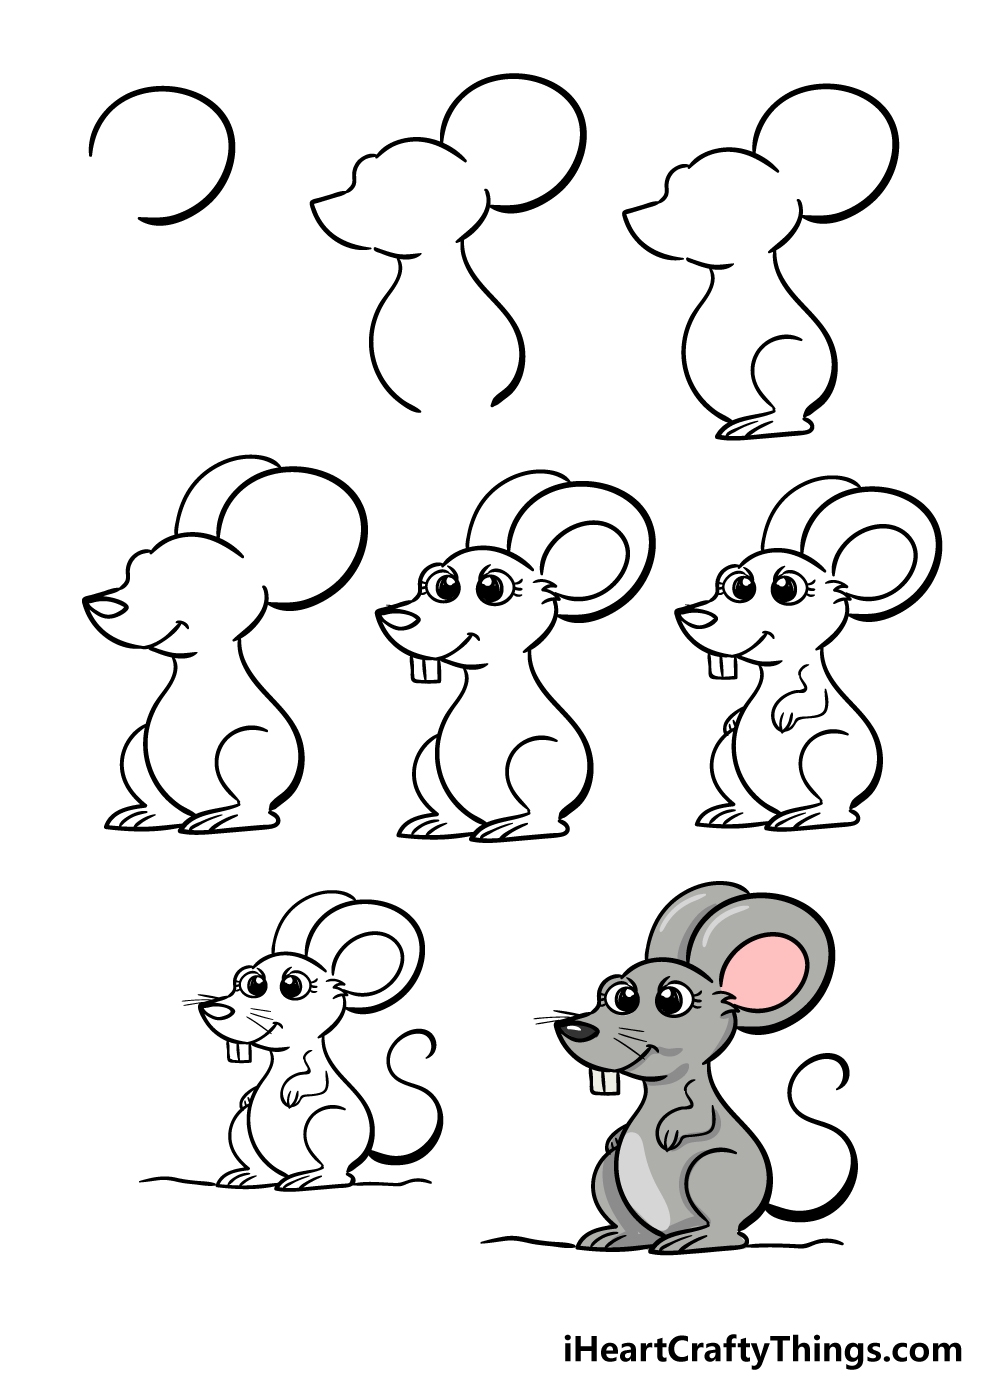 Нарисовать мышку поэтапно для детей